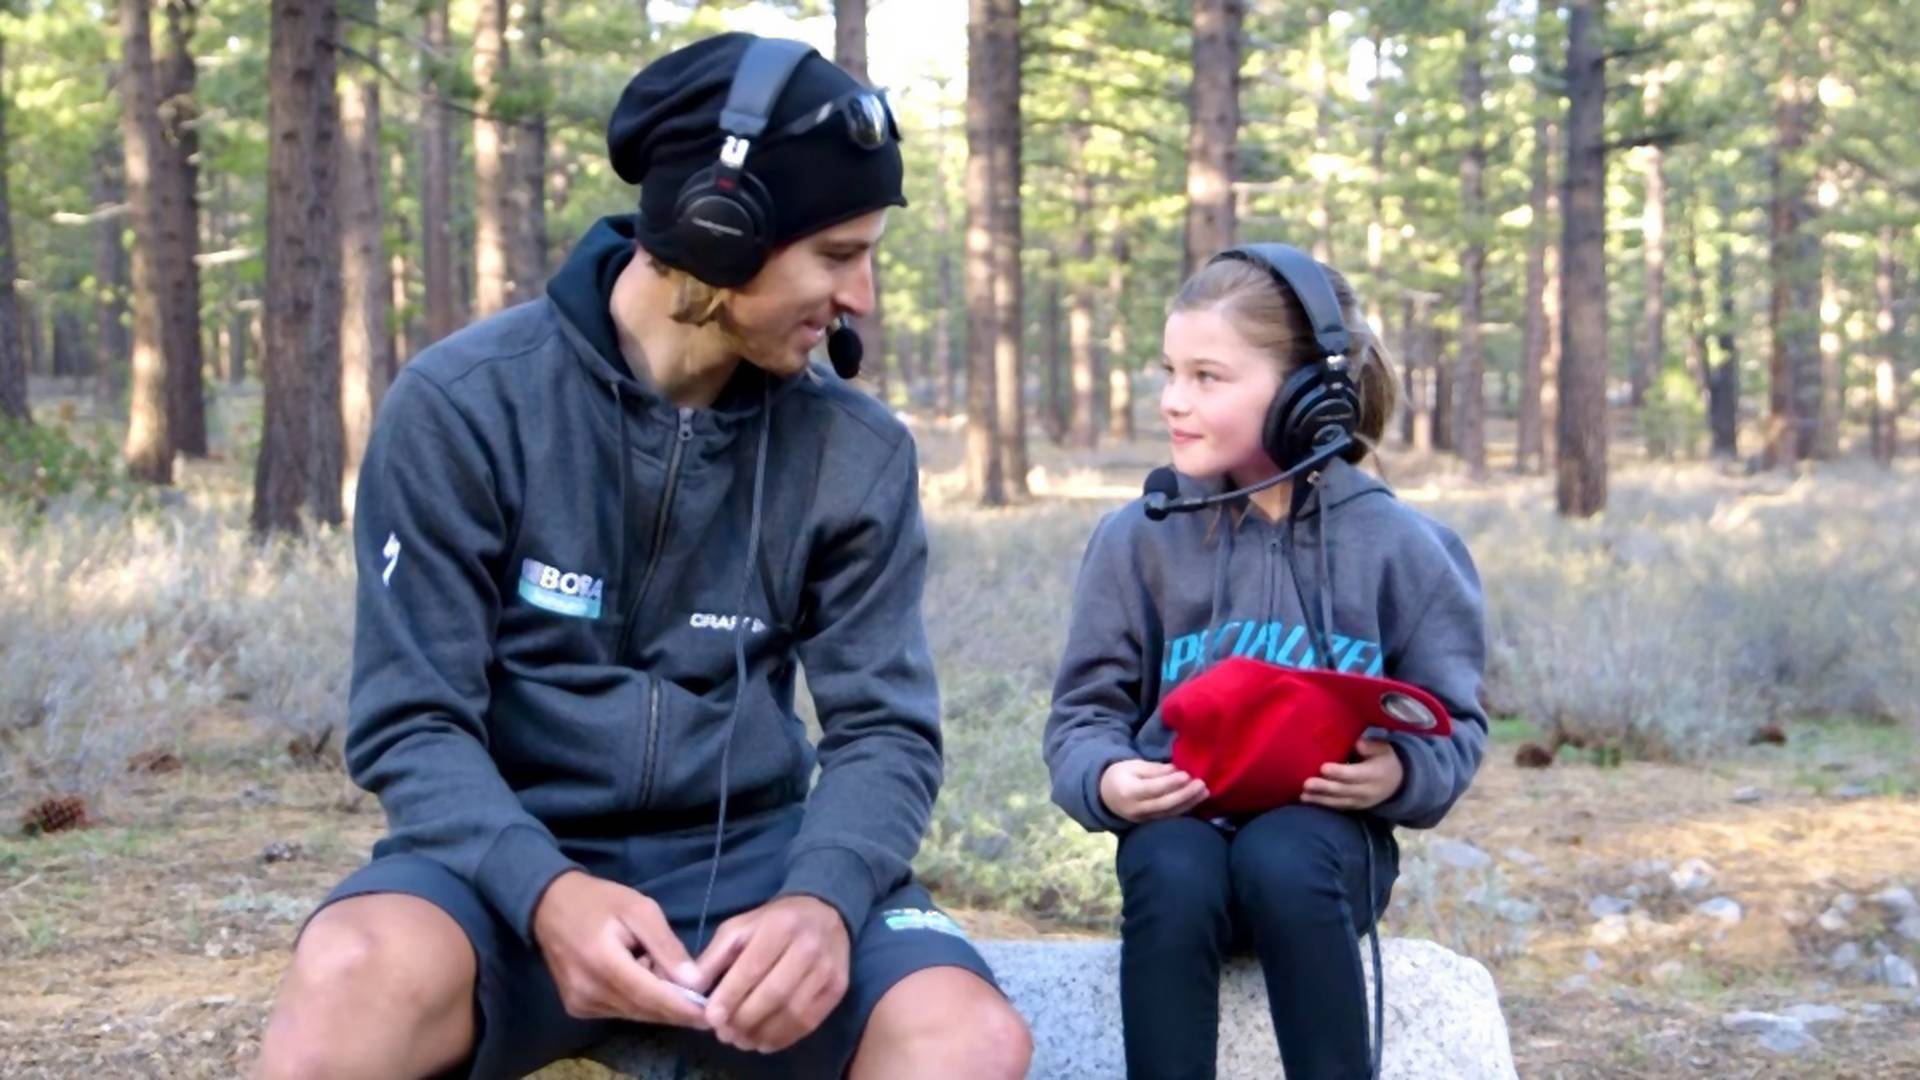 Rozhovor vďaka gumovým medvedíkom: 9-ročná Ruby vyspovedala Petra Sagana